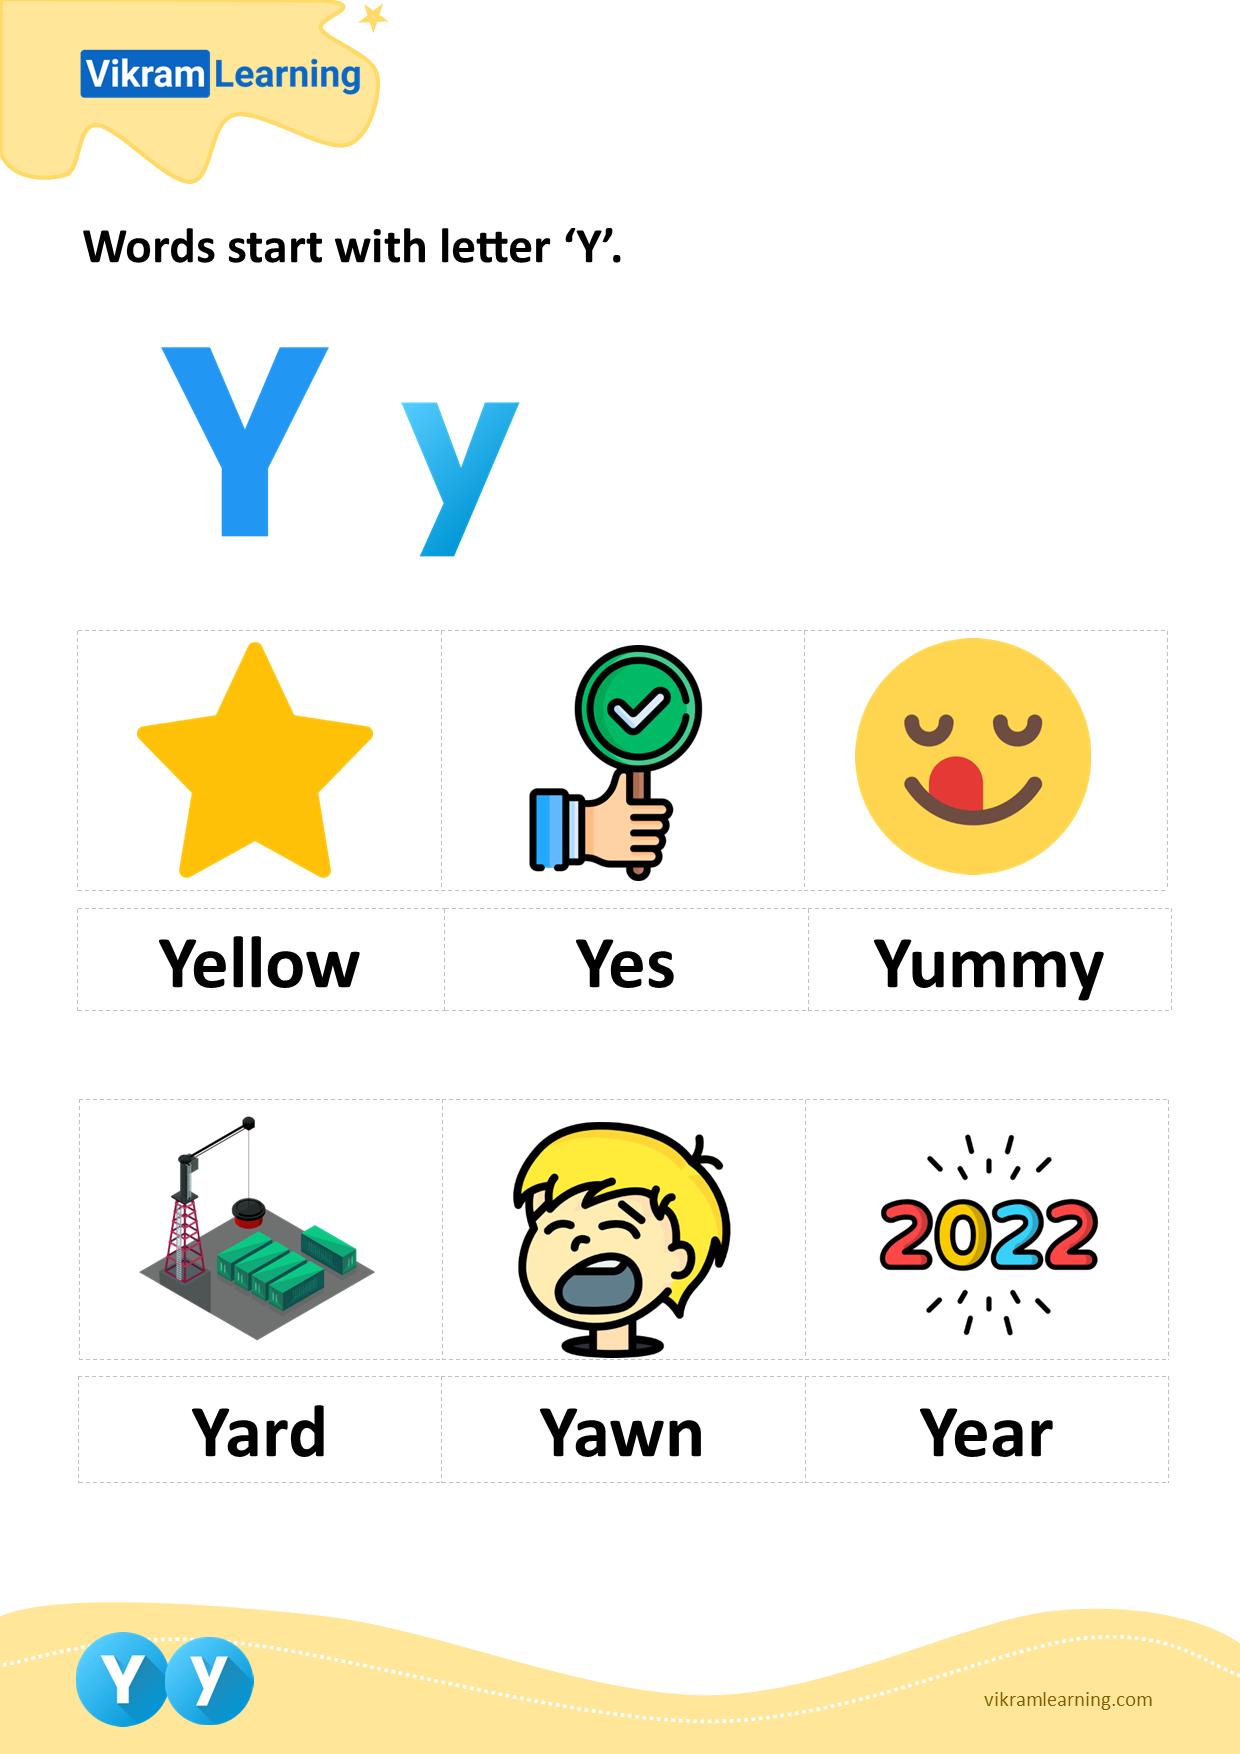 Download words start with letter 'y' worksheets | vikramlearning.com